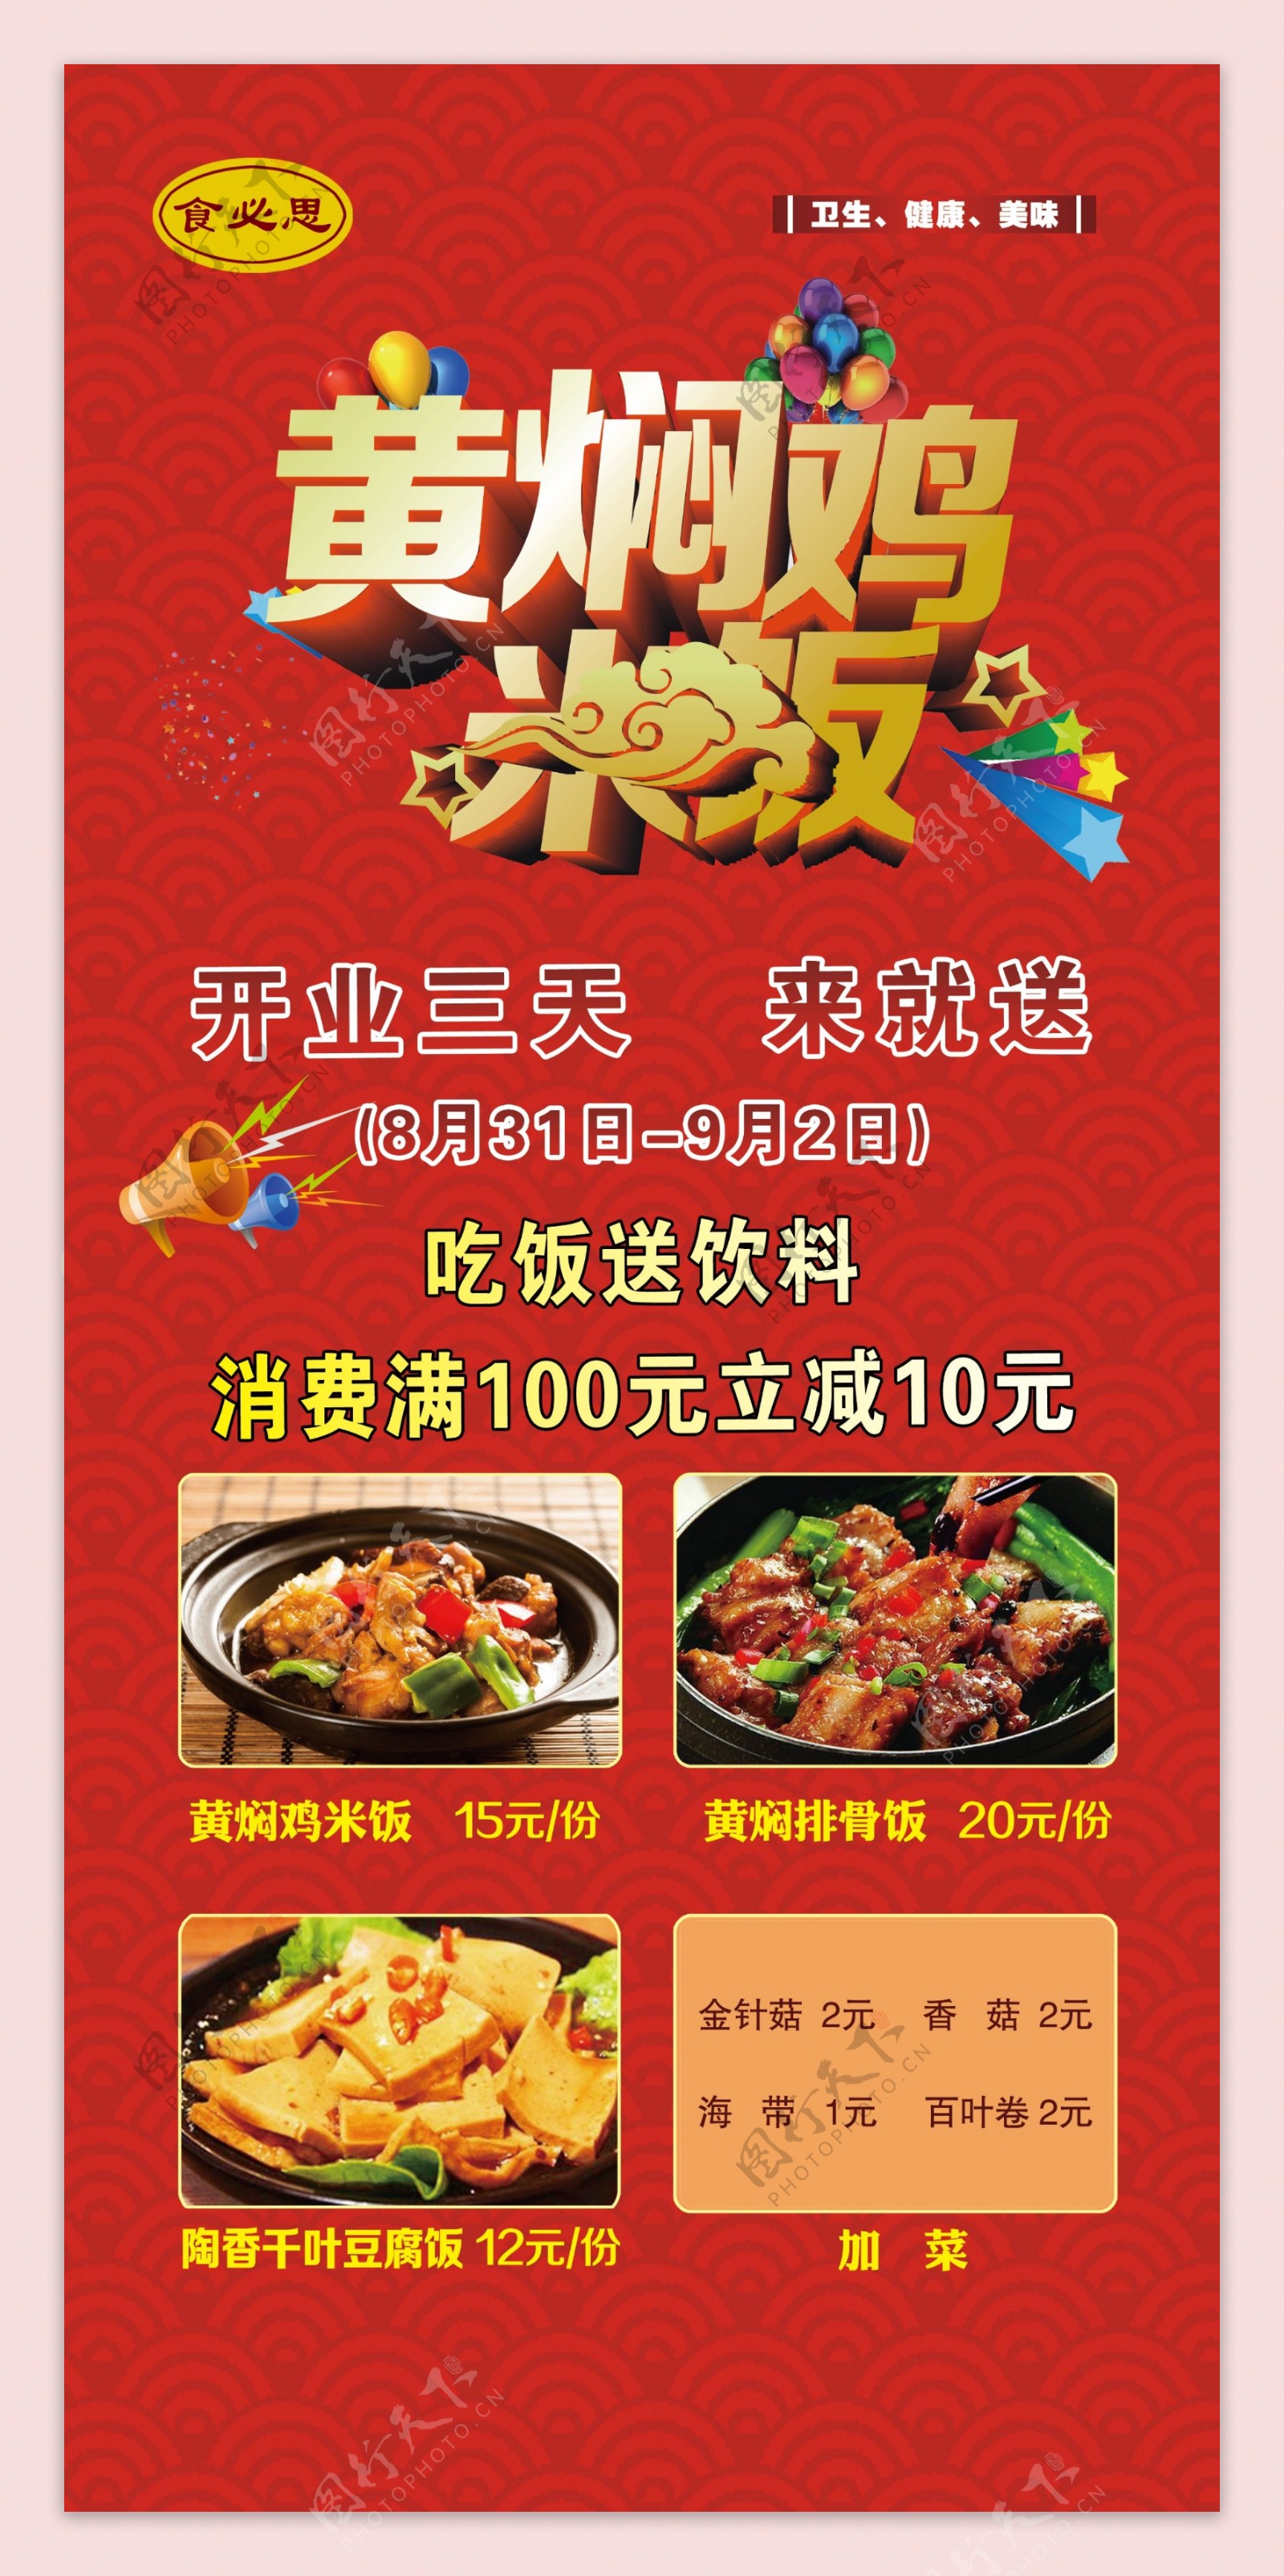 黄焖鸡米饭开业广告